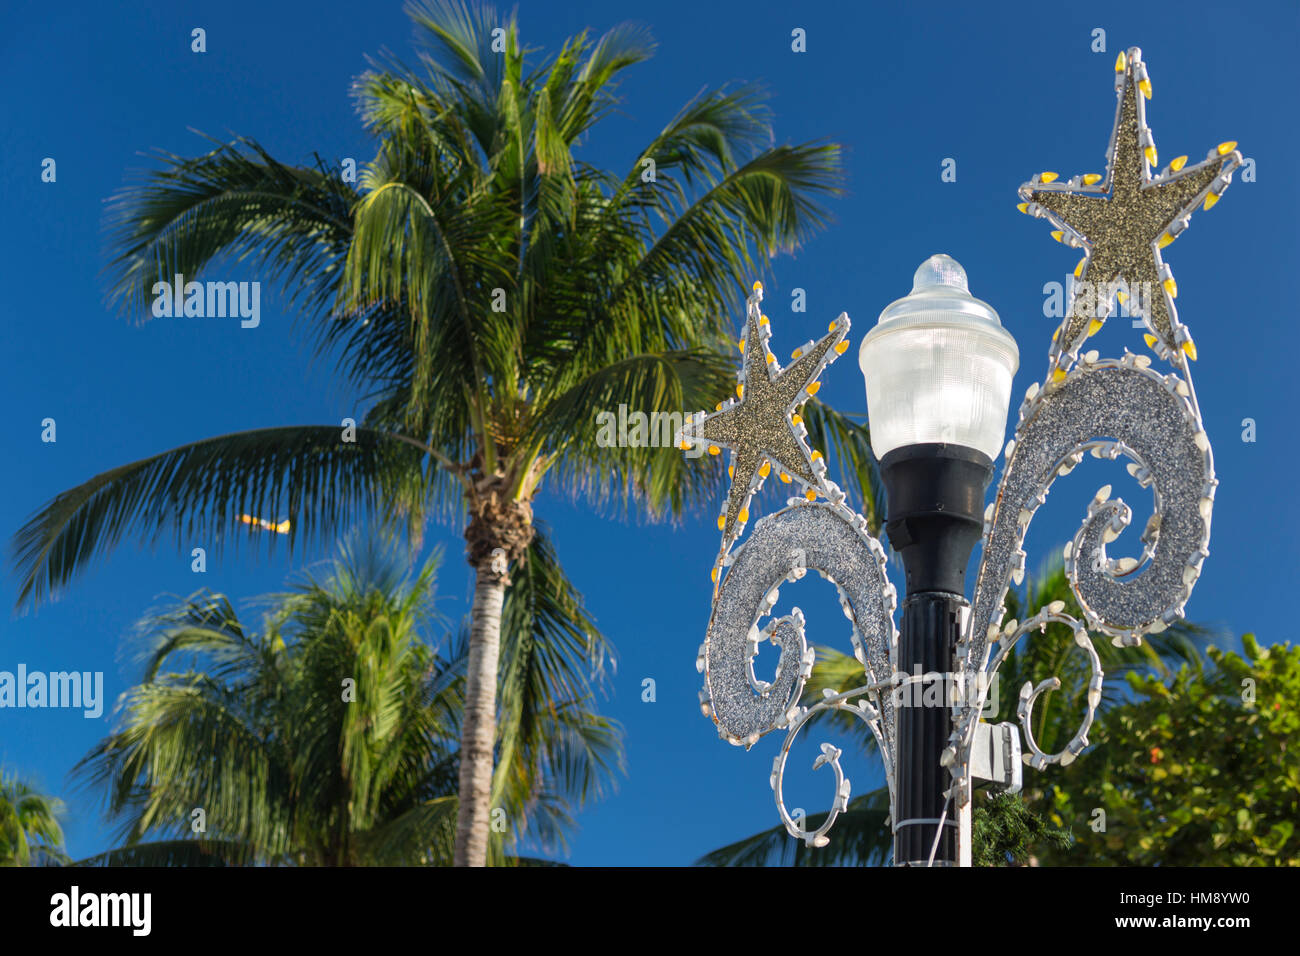 Palmiers DÉCORATIONS DE NOËL LAMPE RUE OCEAN DRIVE SOUTH BEACH MIAMI BEACH FLORIDE USA Banque D'Images